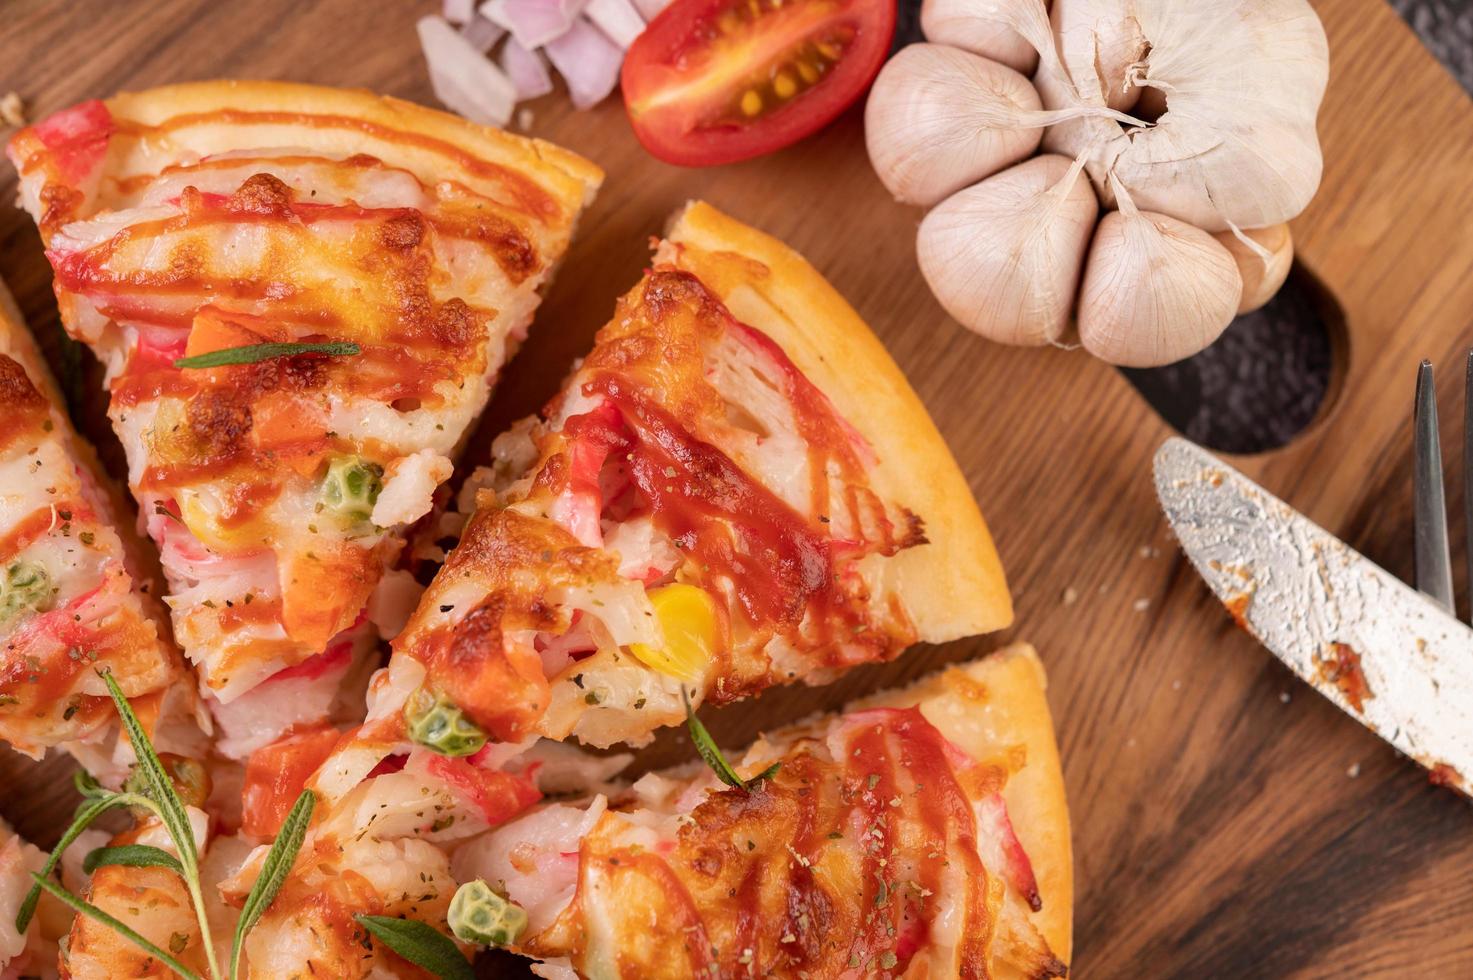 pizza caseira com ingredientes foto